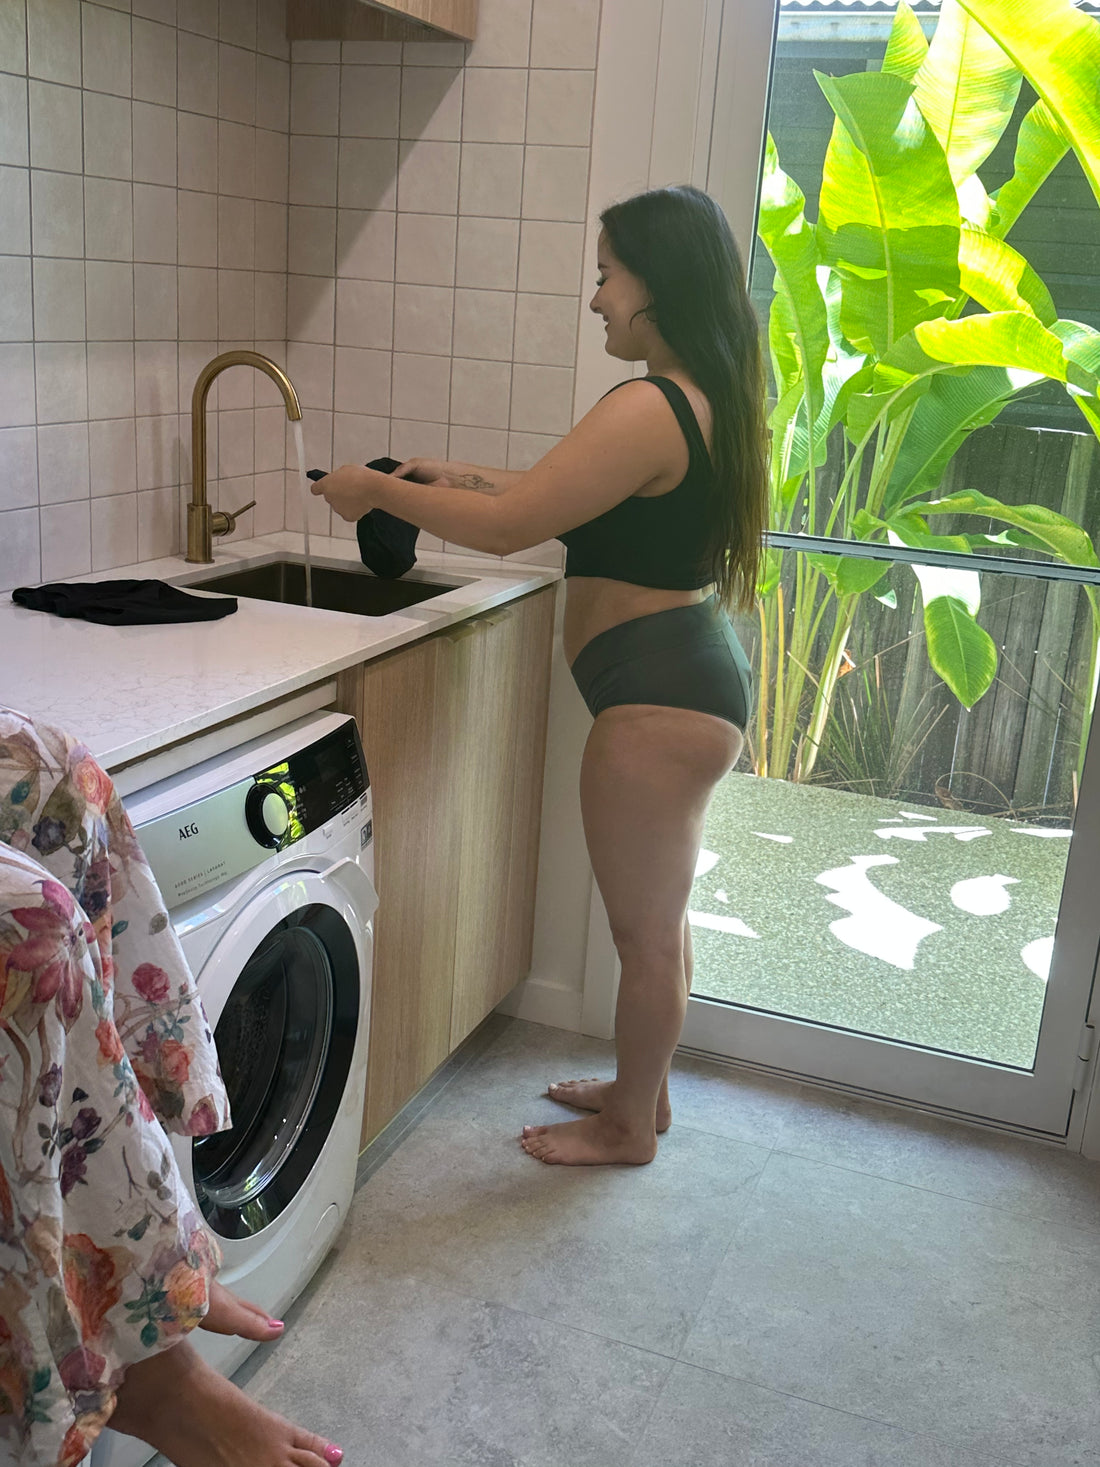 What's the best way to wash period underwear? – MyNickerBot